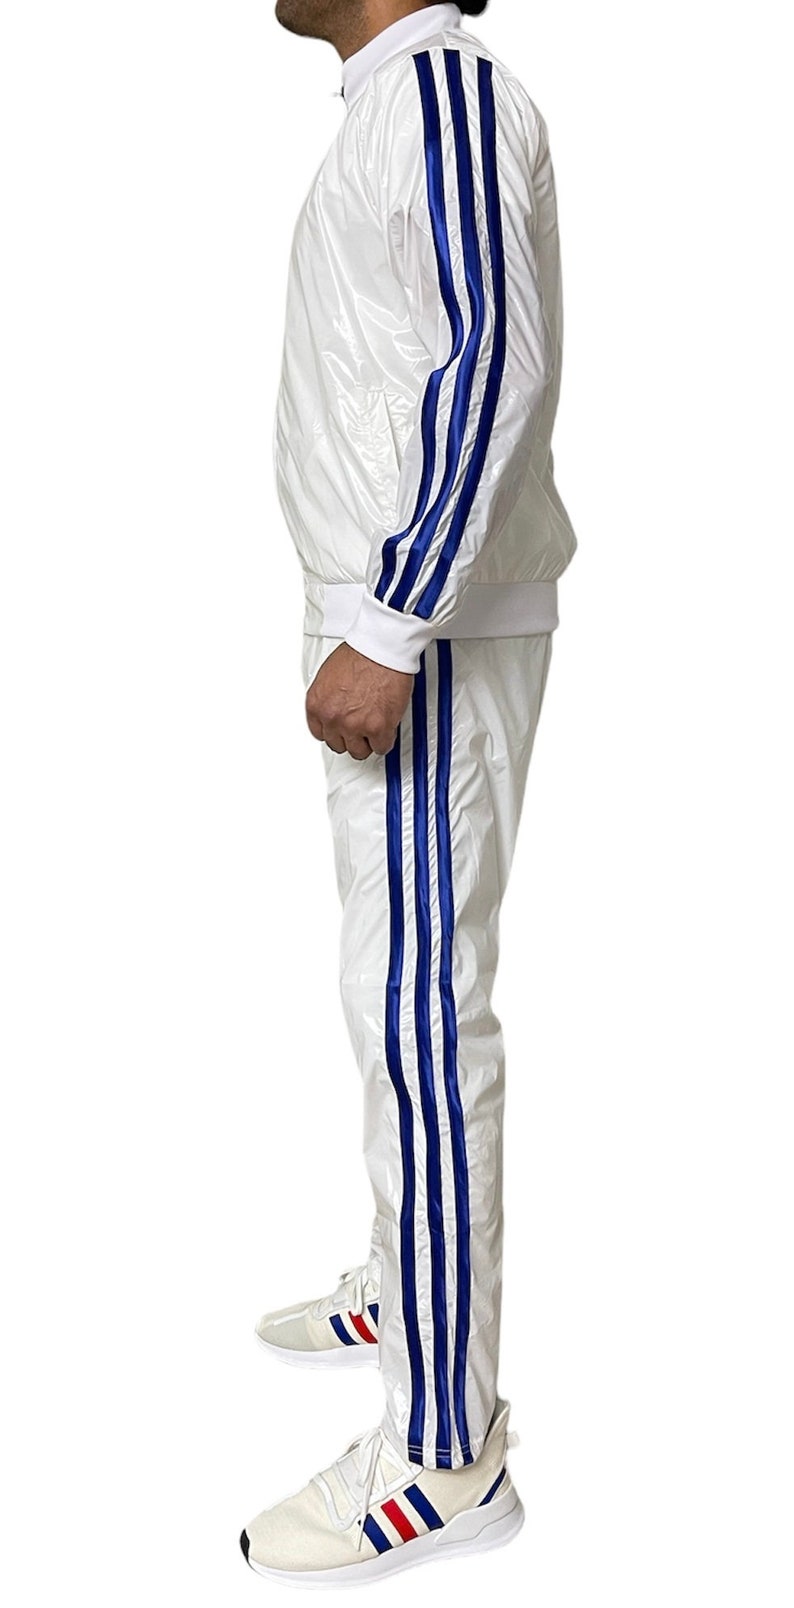 Abbigliamento sportivo abbagliante: scatena il tuo splendore con la tuta da jogging in nylon PU trasparente per eccellenza in bianco/blu immagine 5